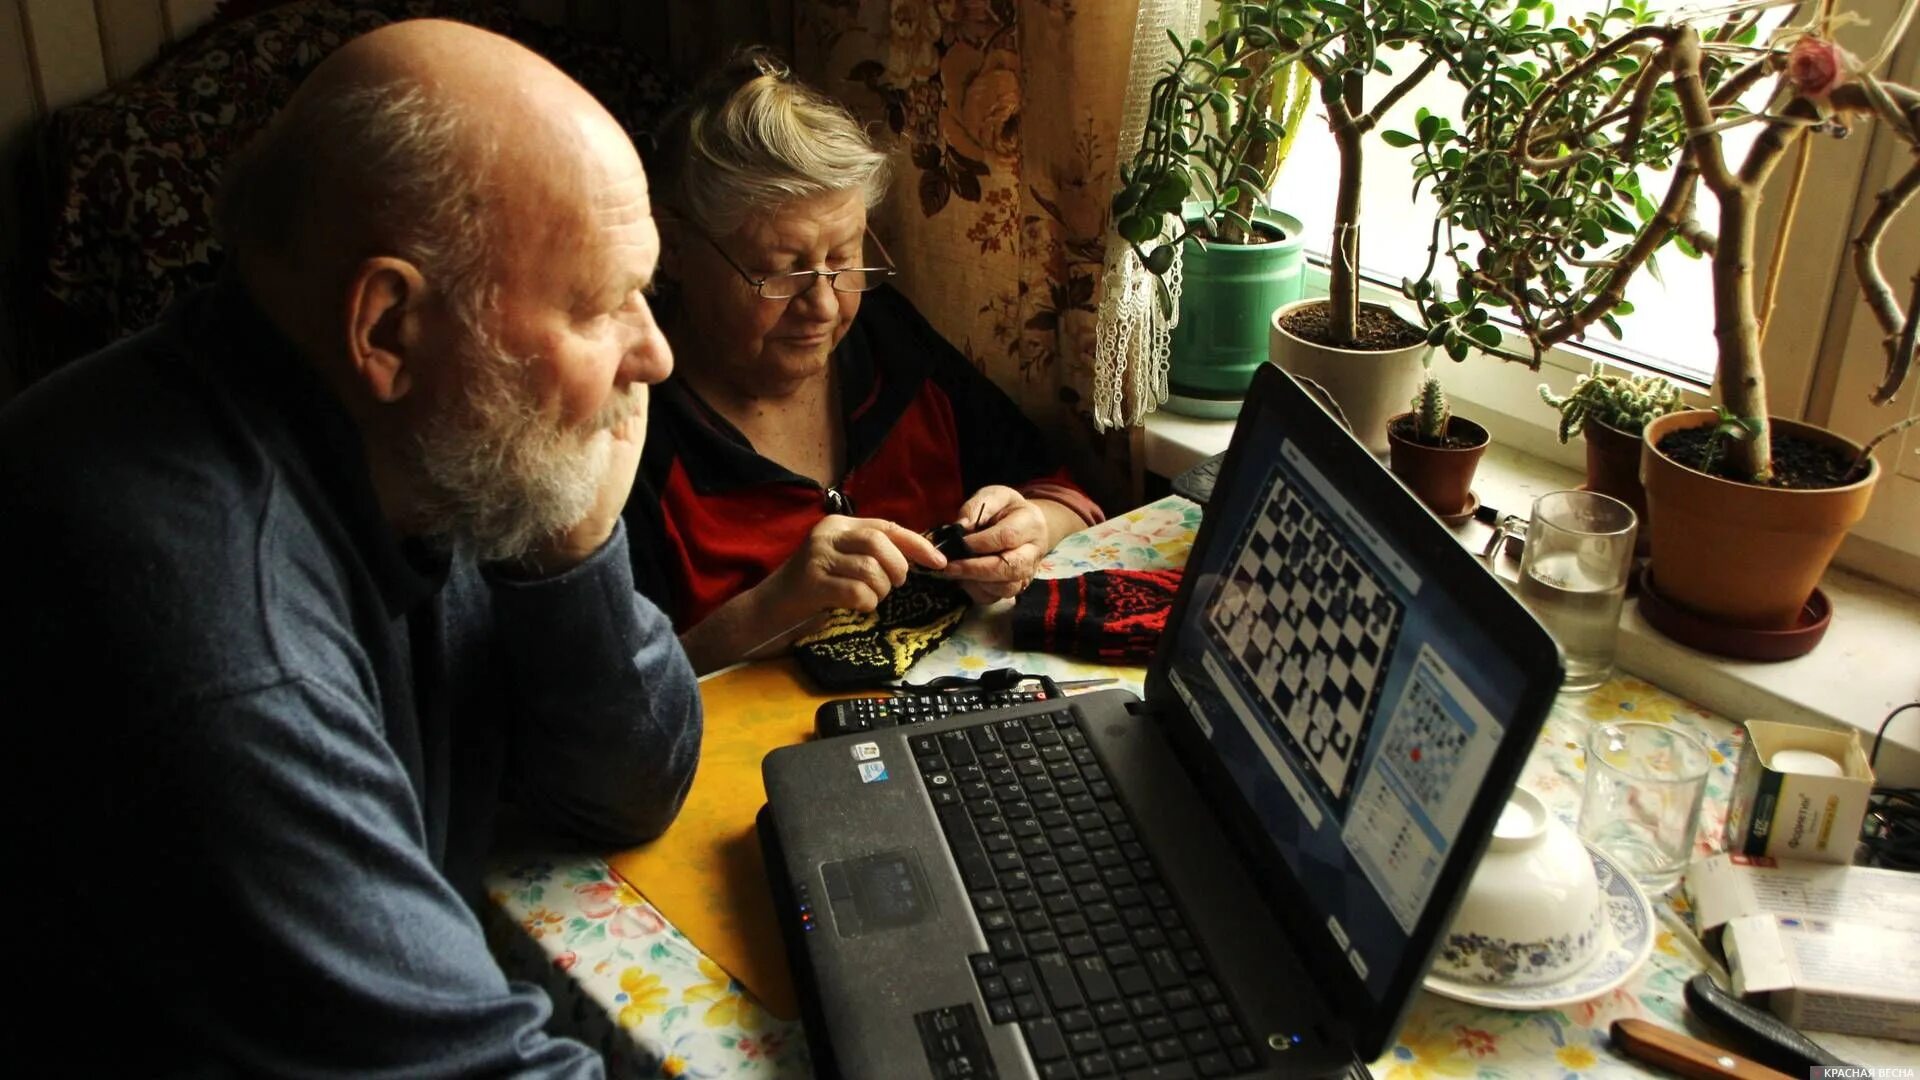 Дом пенсионеров. Пенсионеры дома дома. Пенсионеры в Старом доме. Пенсионеры и компьютер.